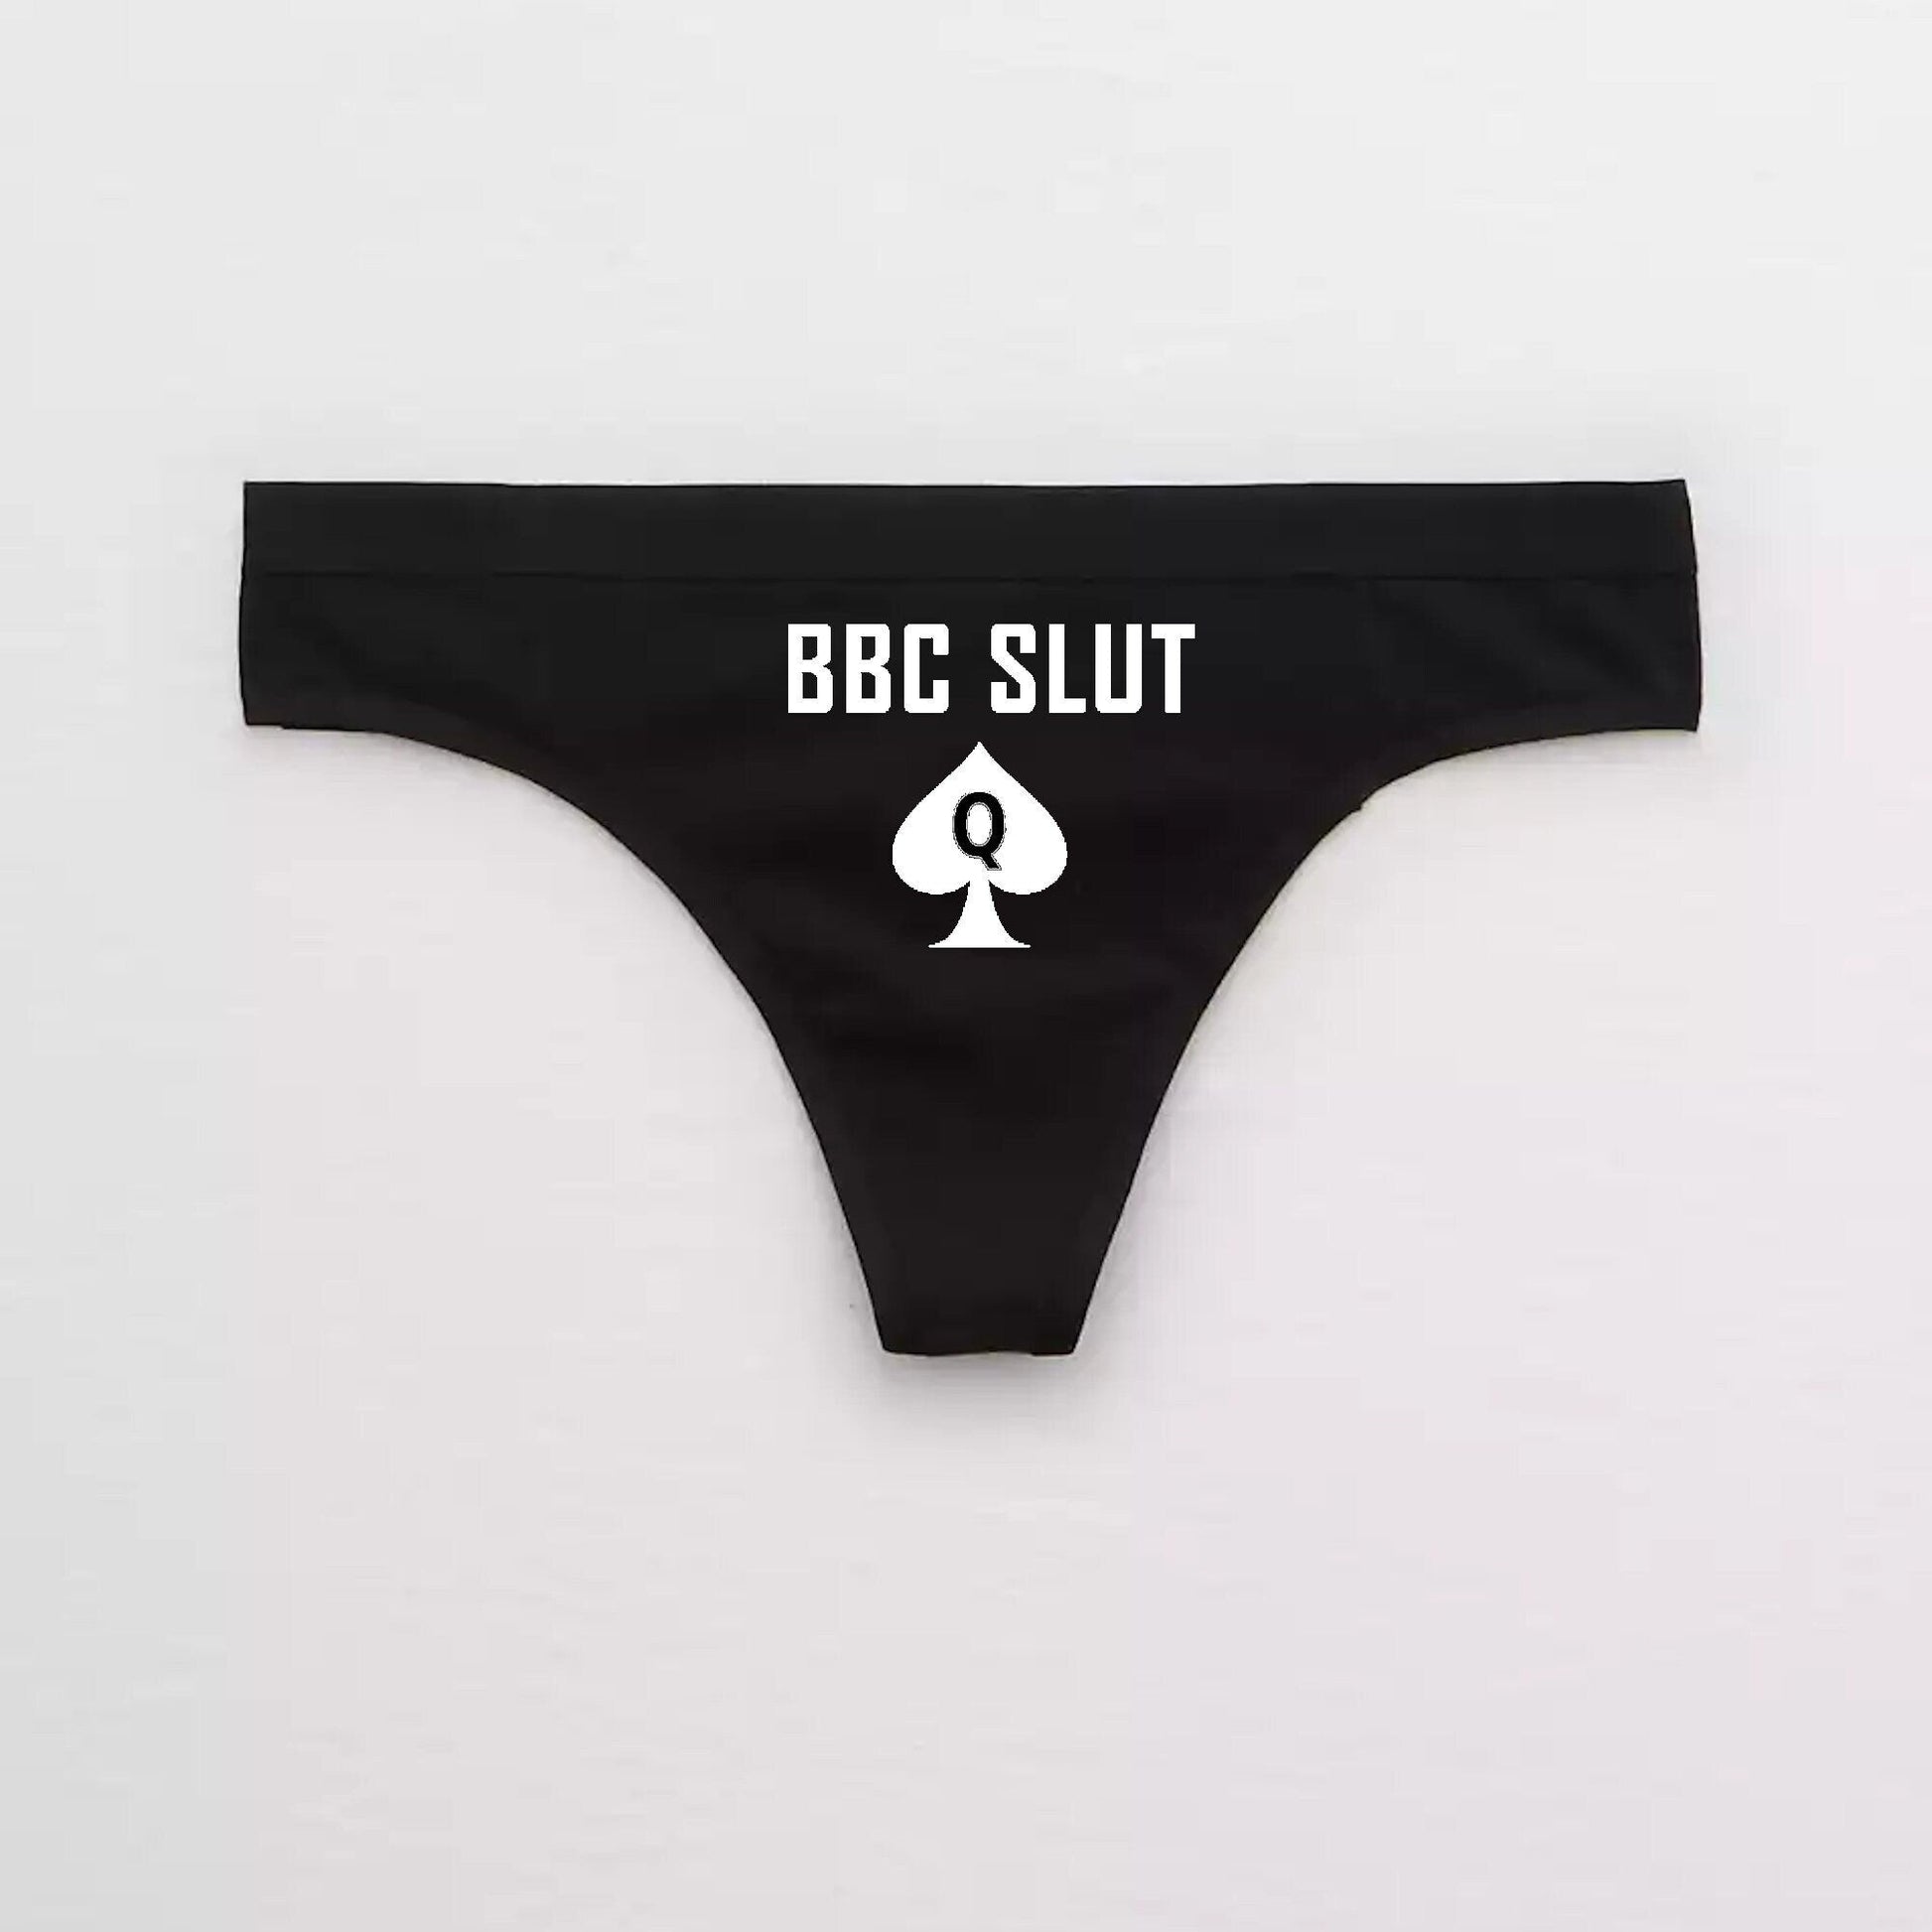 BBC Slut qos Panties